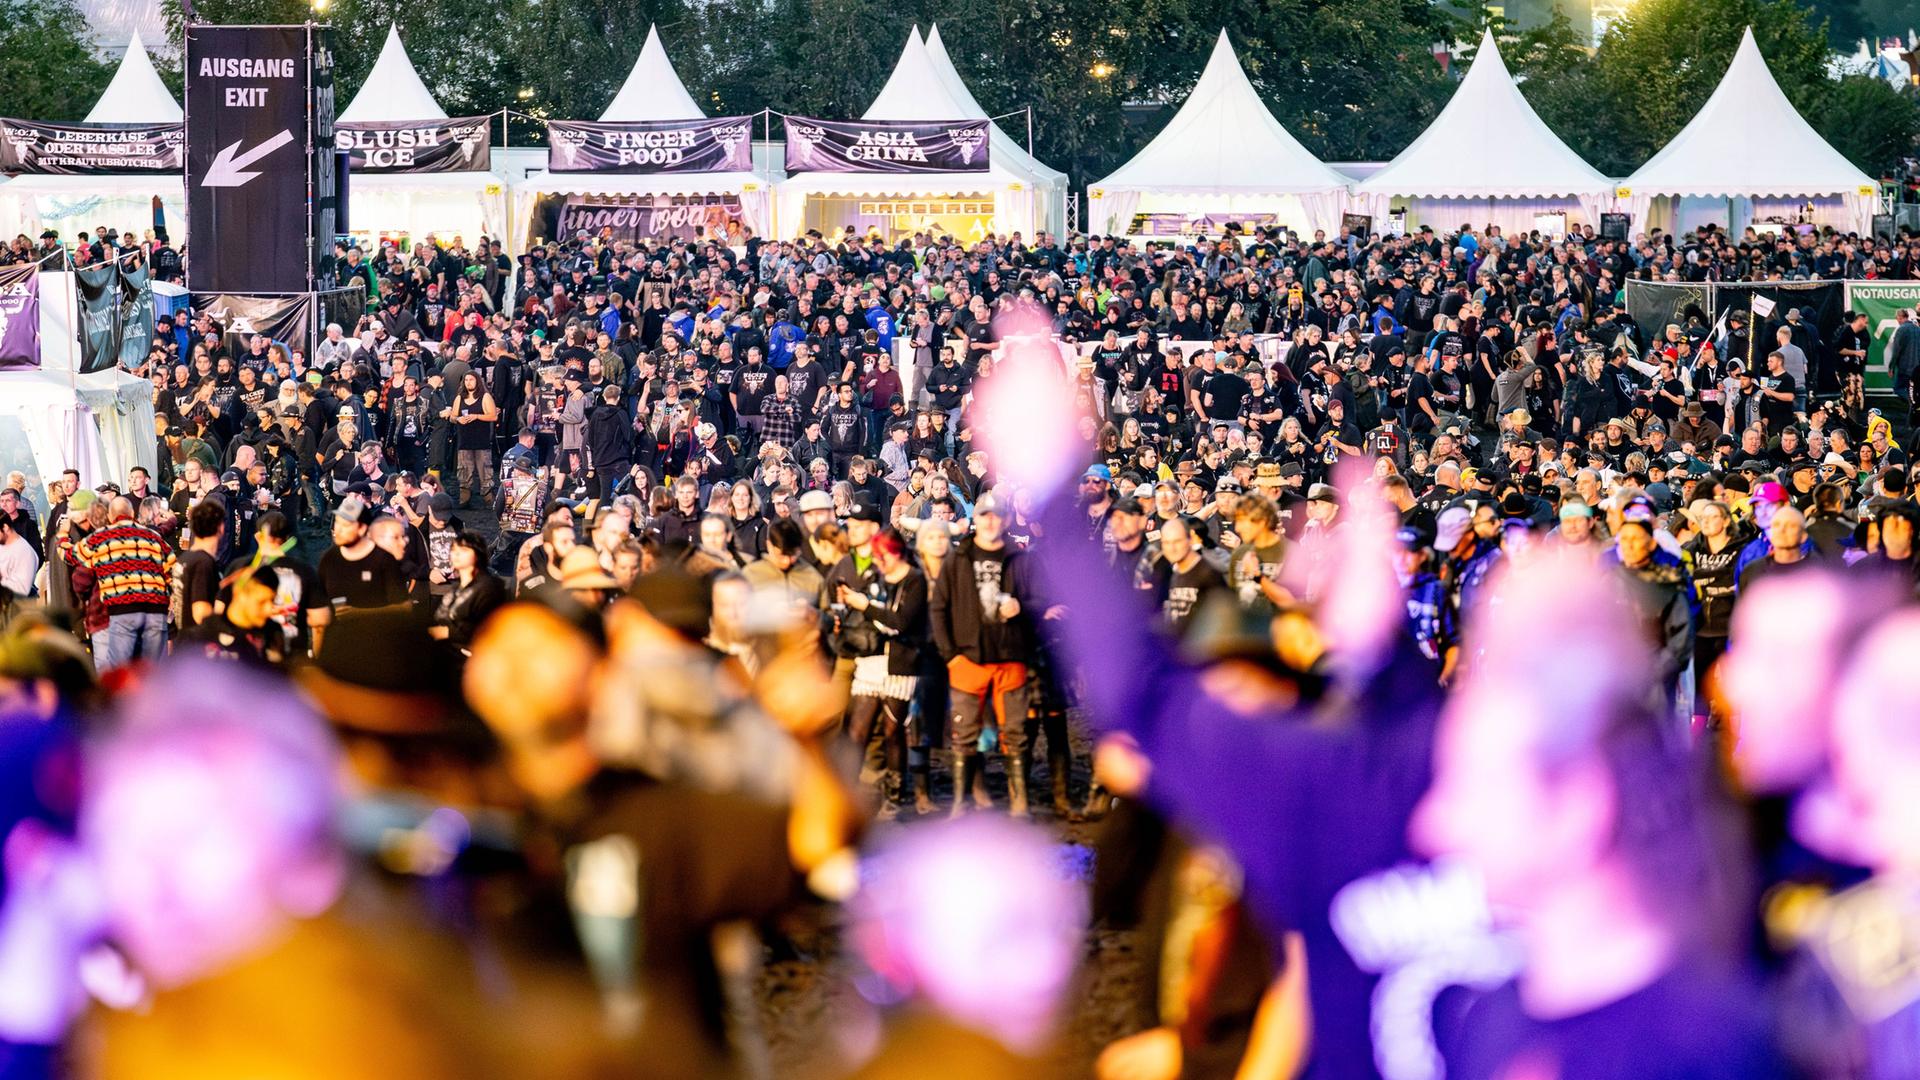 Wacken: Festivalbesucher bevölkern das Veranstaltungsgelände vor den Bühnen